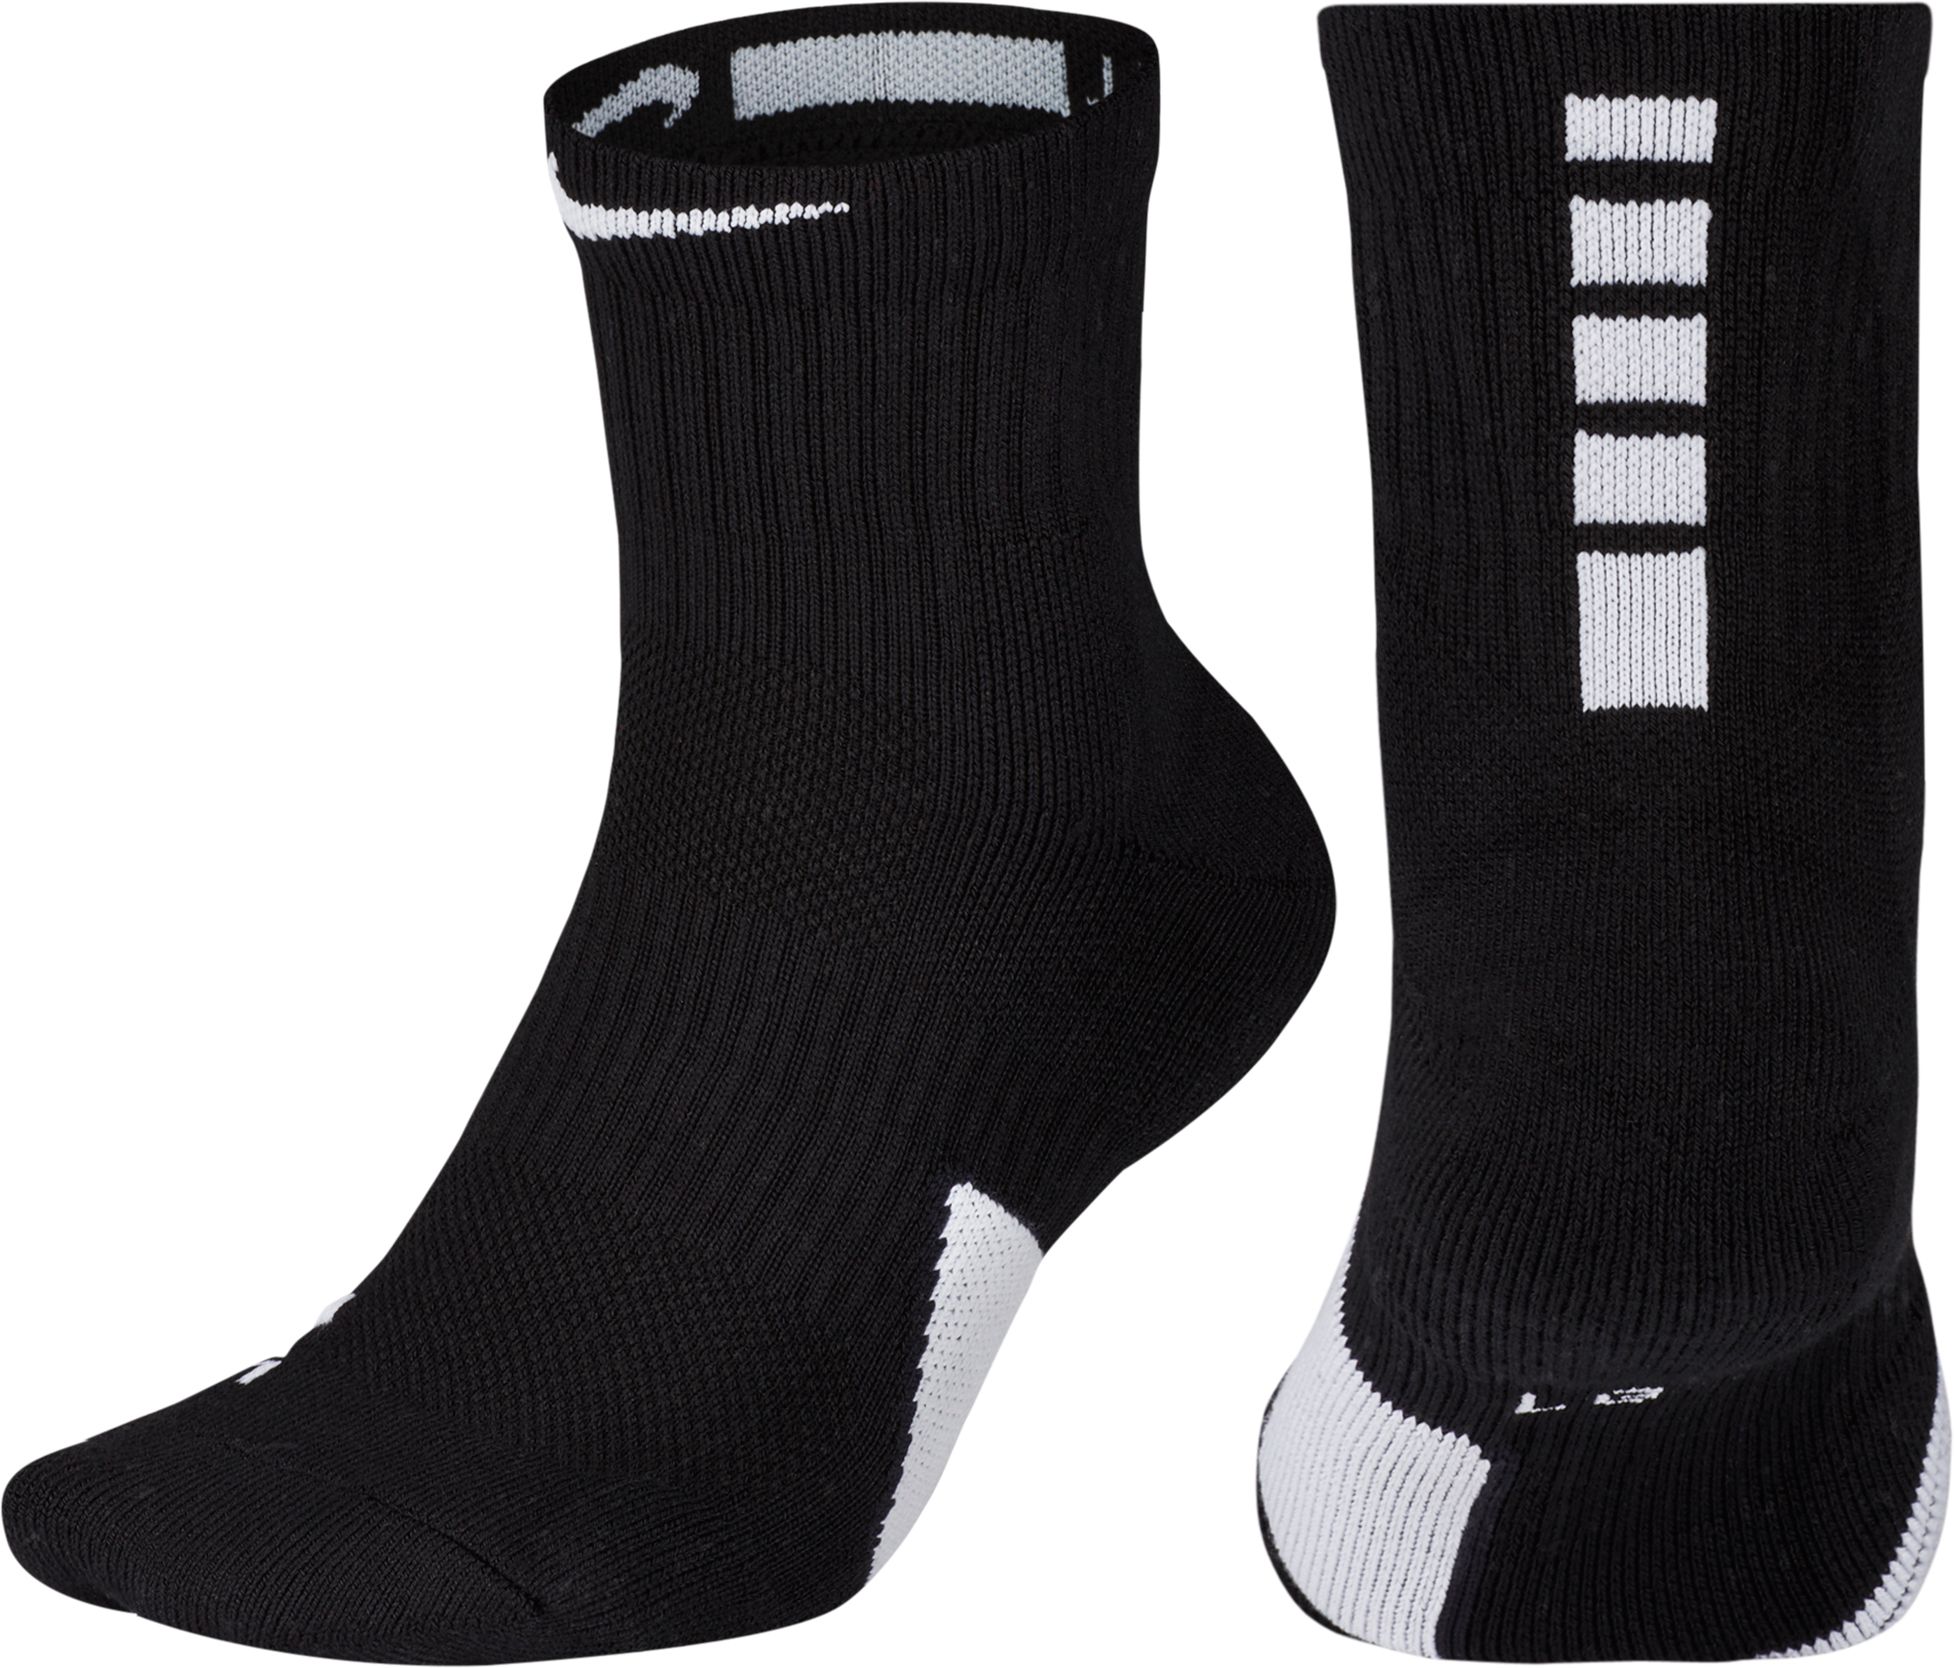 women's nike basketball socks